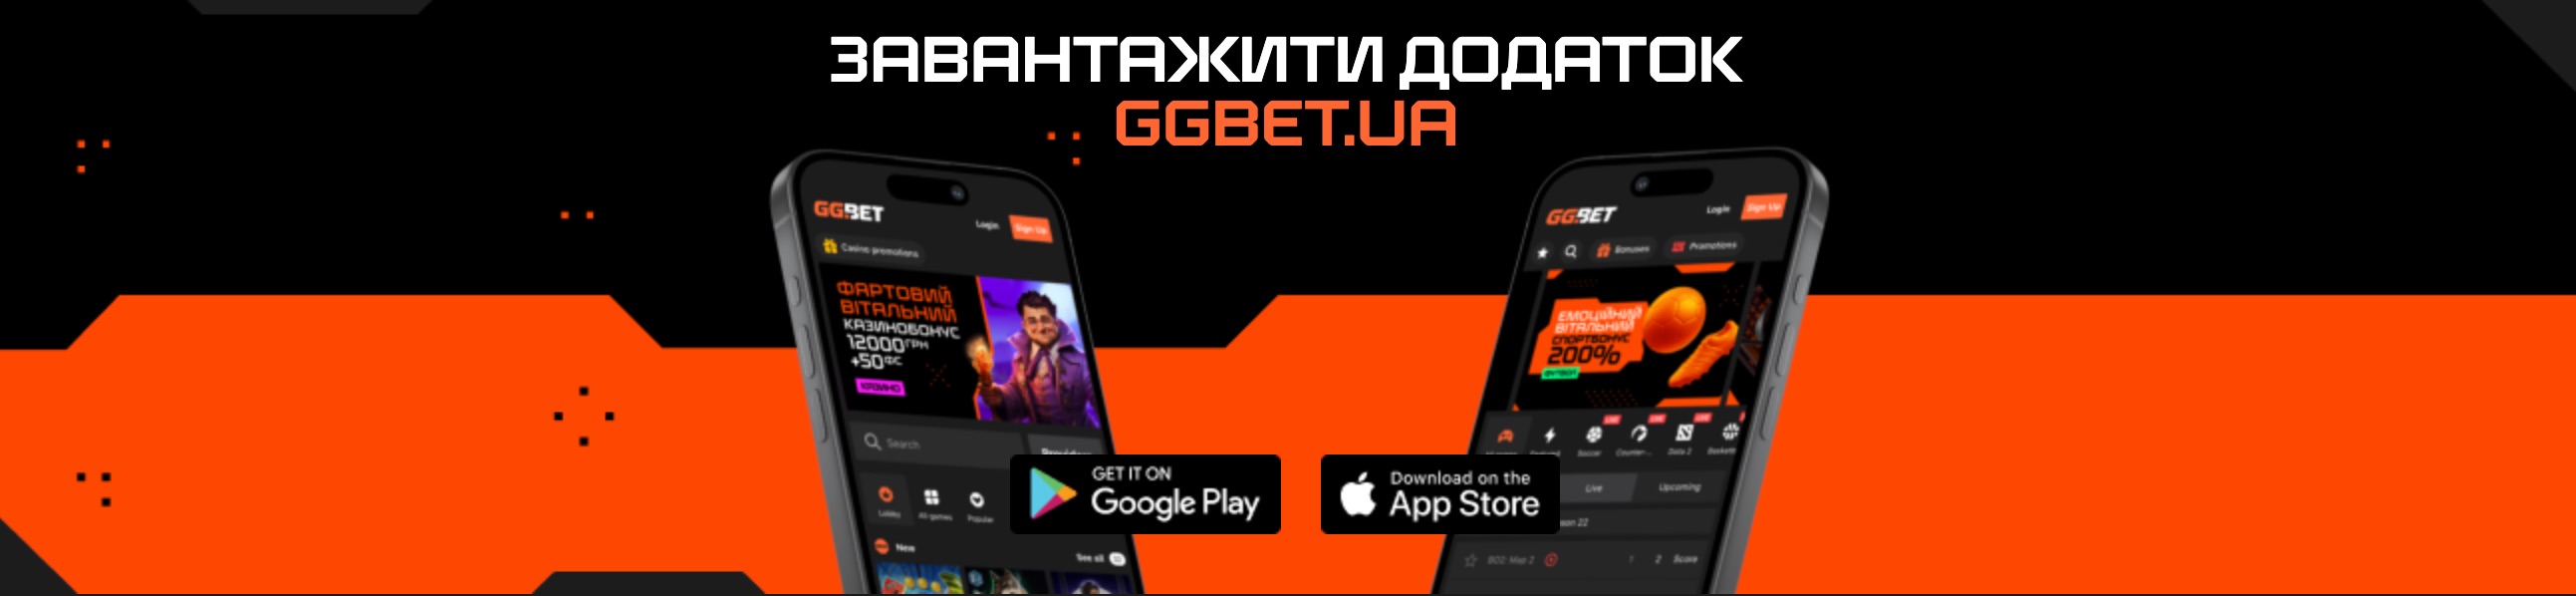 GGbet мобильное приложение.